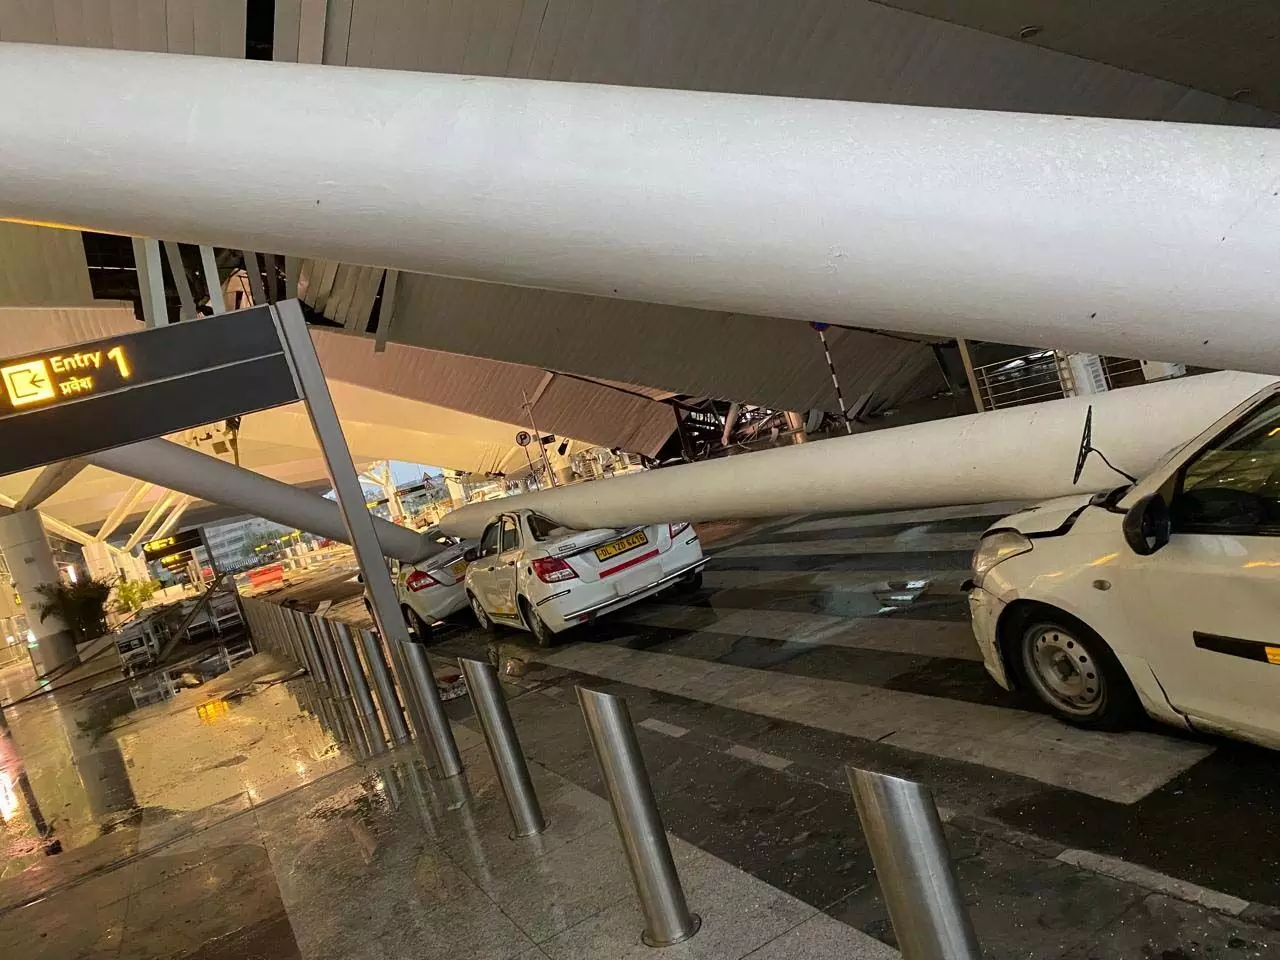 IGI Airport के T1 टर्मिनल में हादसा, छत गिरने से 3 लोग घायल